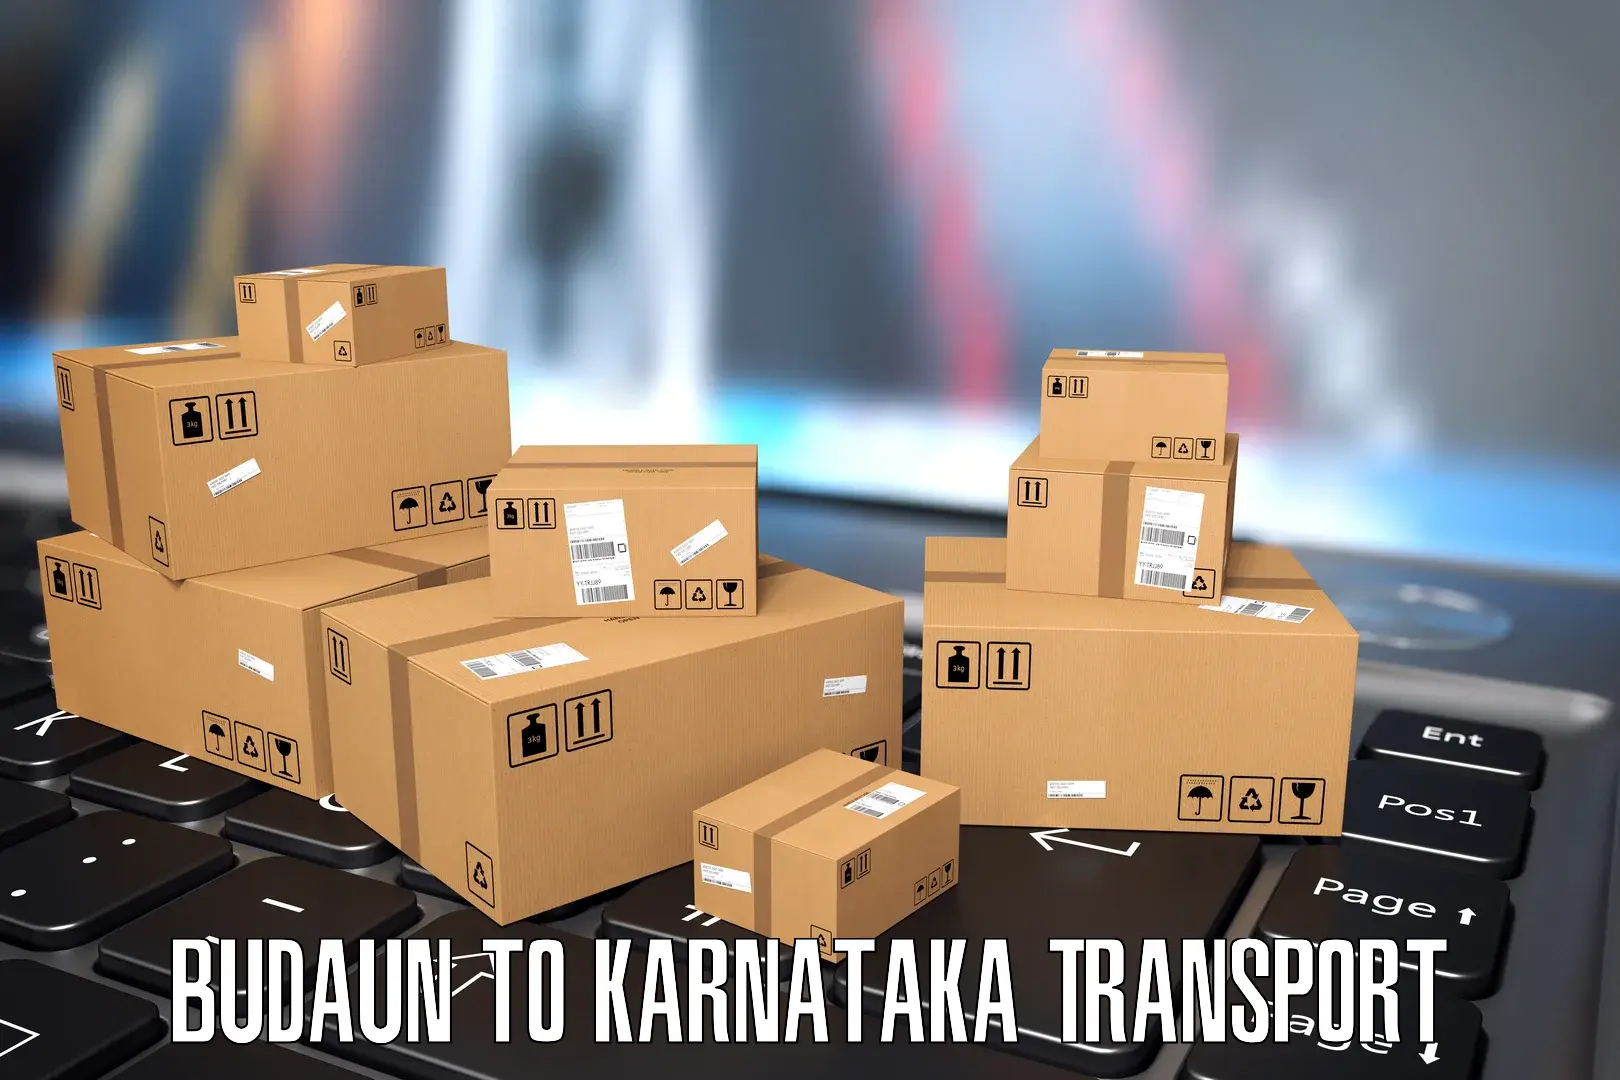 Two wheeler transport services Budaun to Karnataka